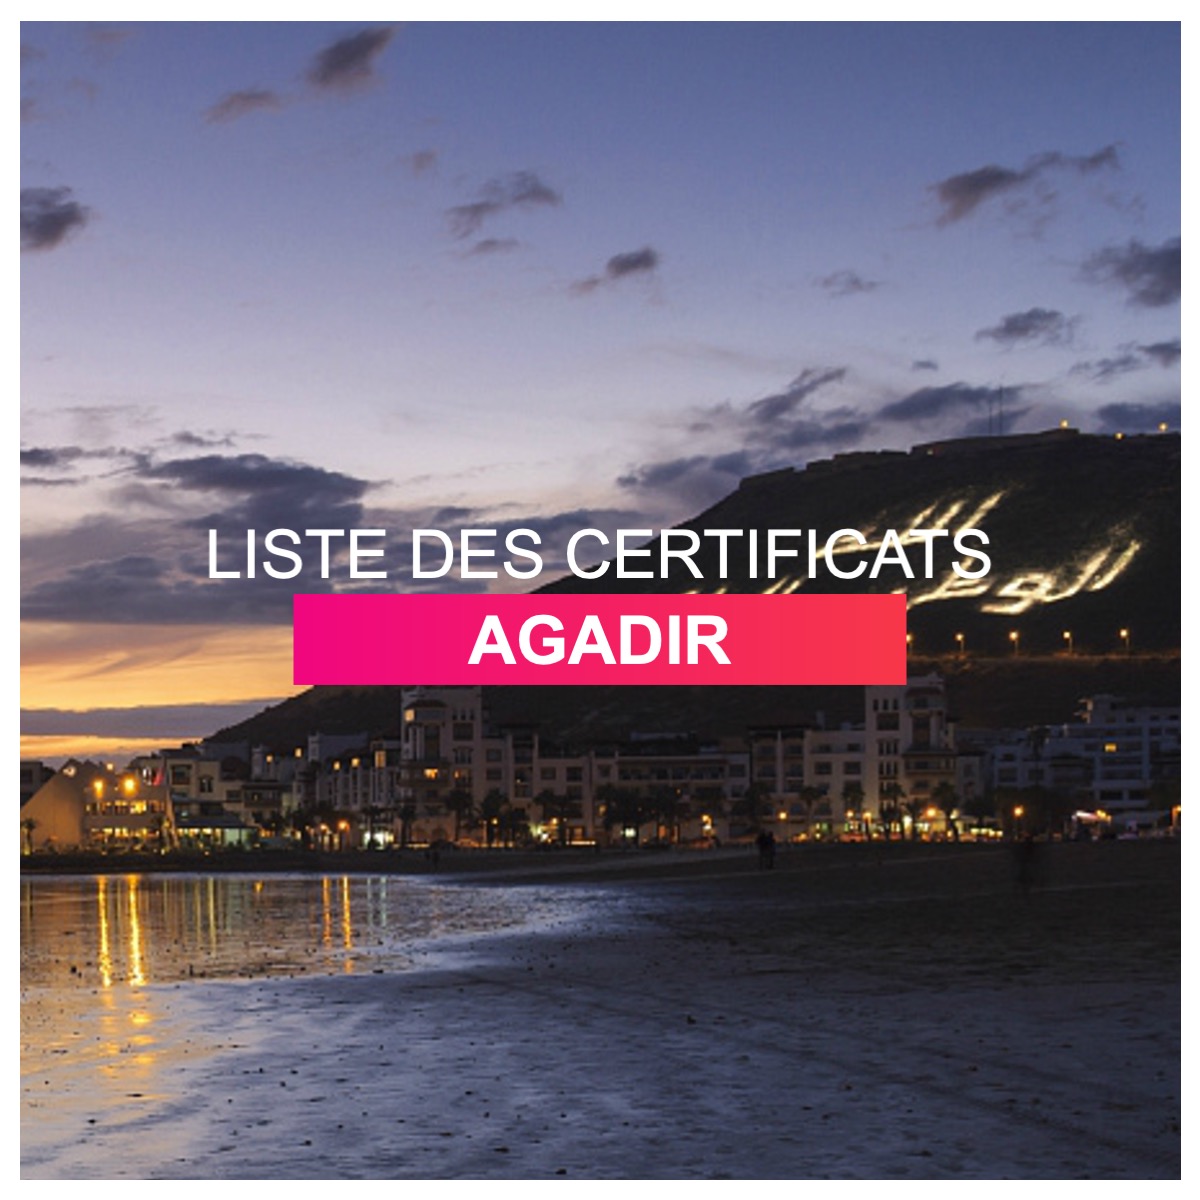 Liste des certificats Agadir l Dates-concours.ma